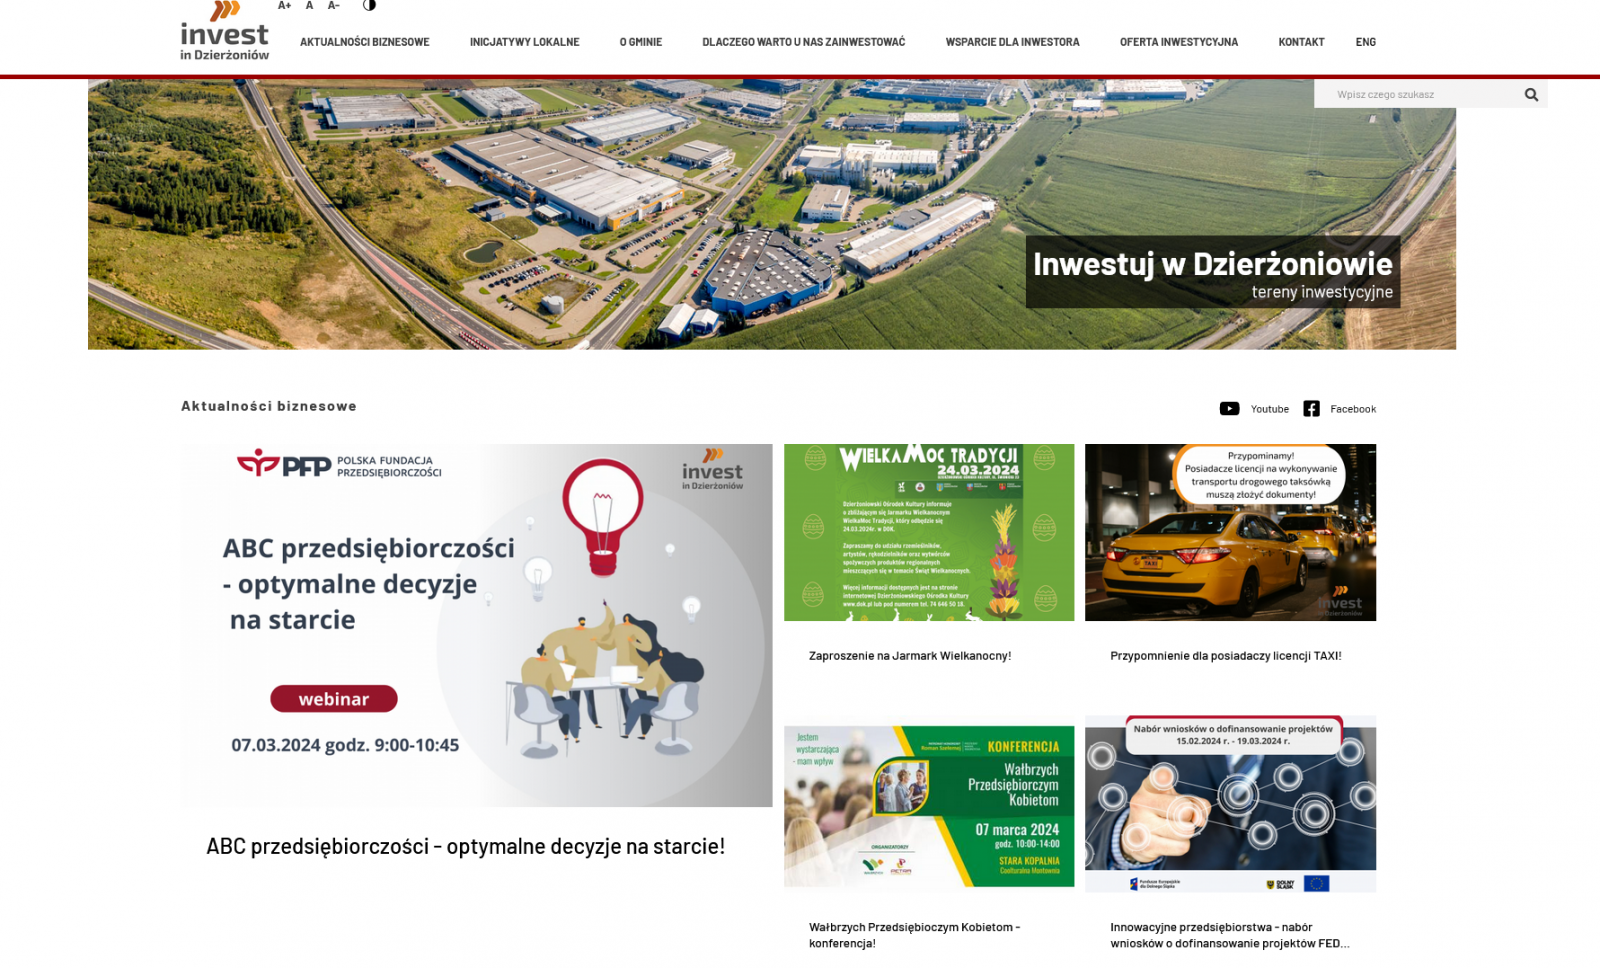 Widok strony internetowej ze zdjęciami zakładów produkcyjnych i zamieszczonymi informacjami